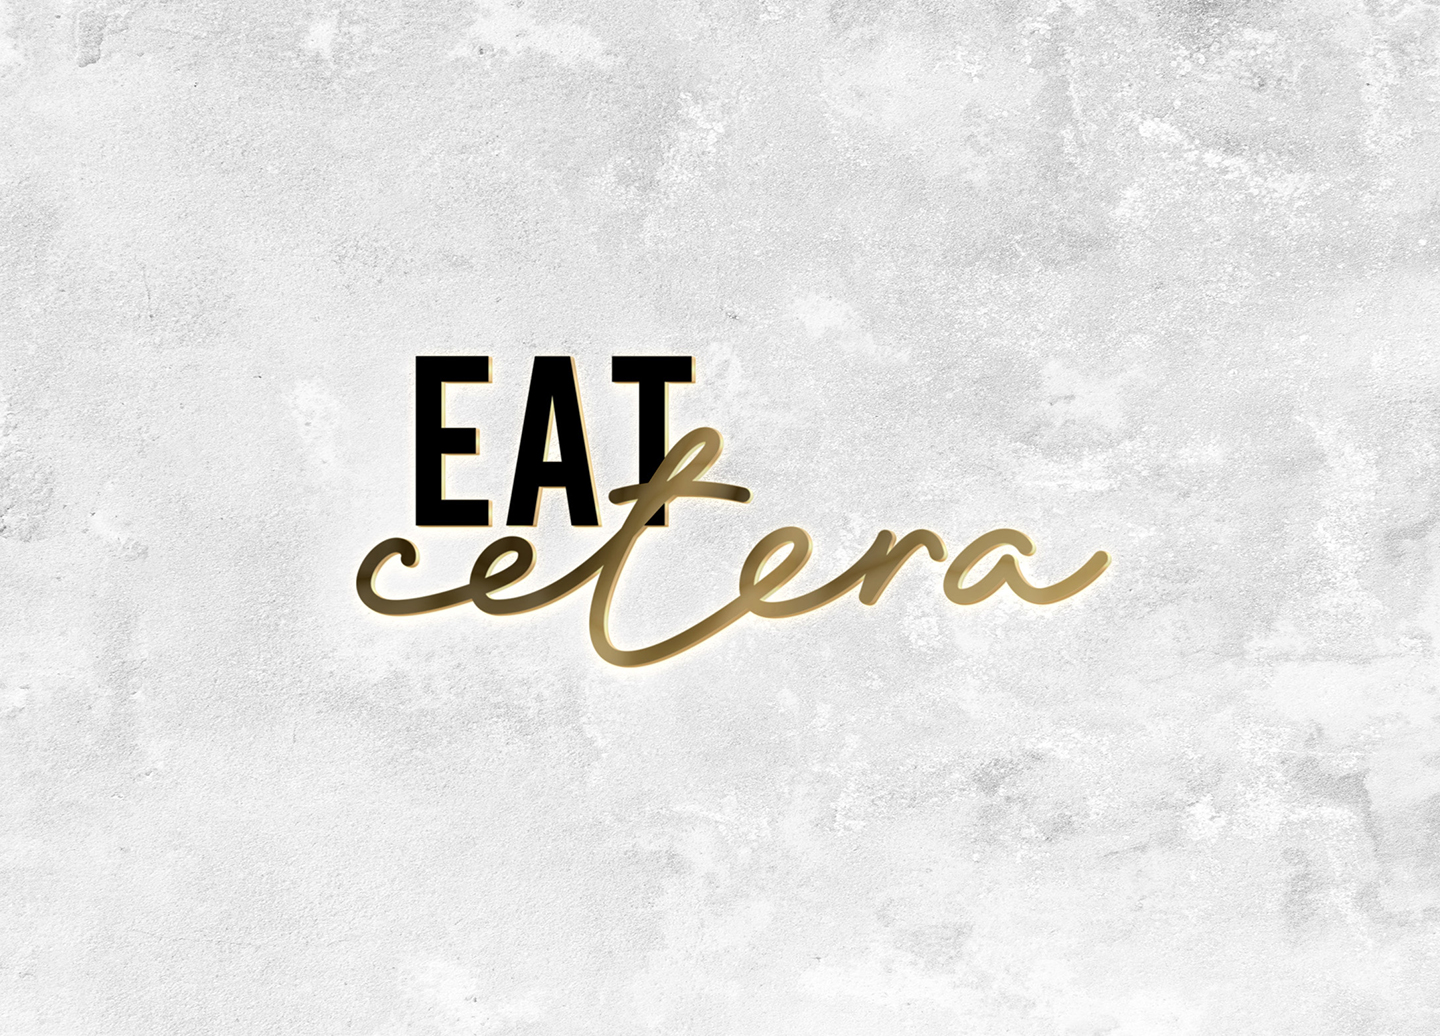 Eat Cetera